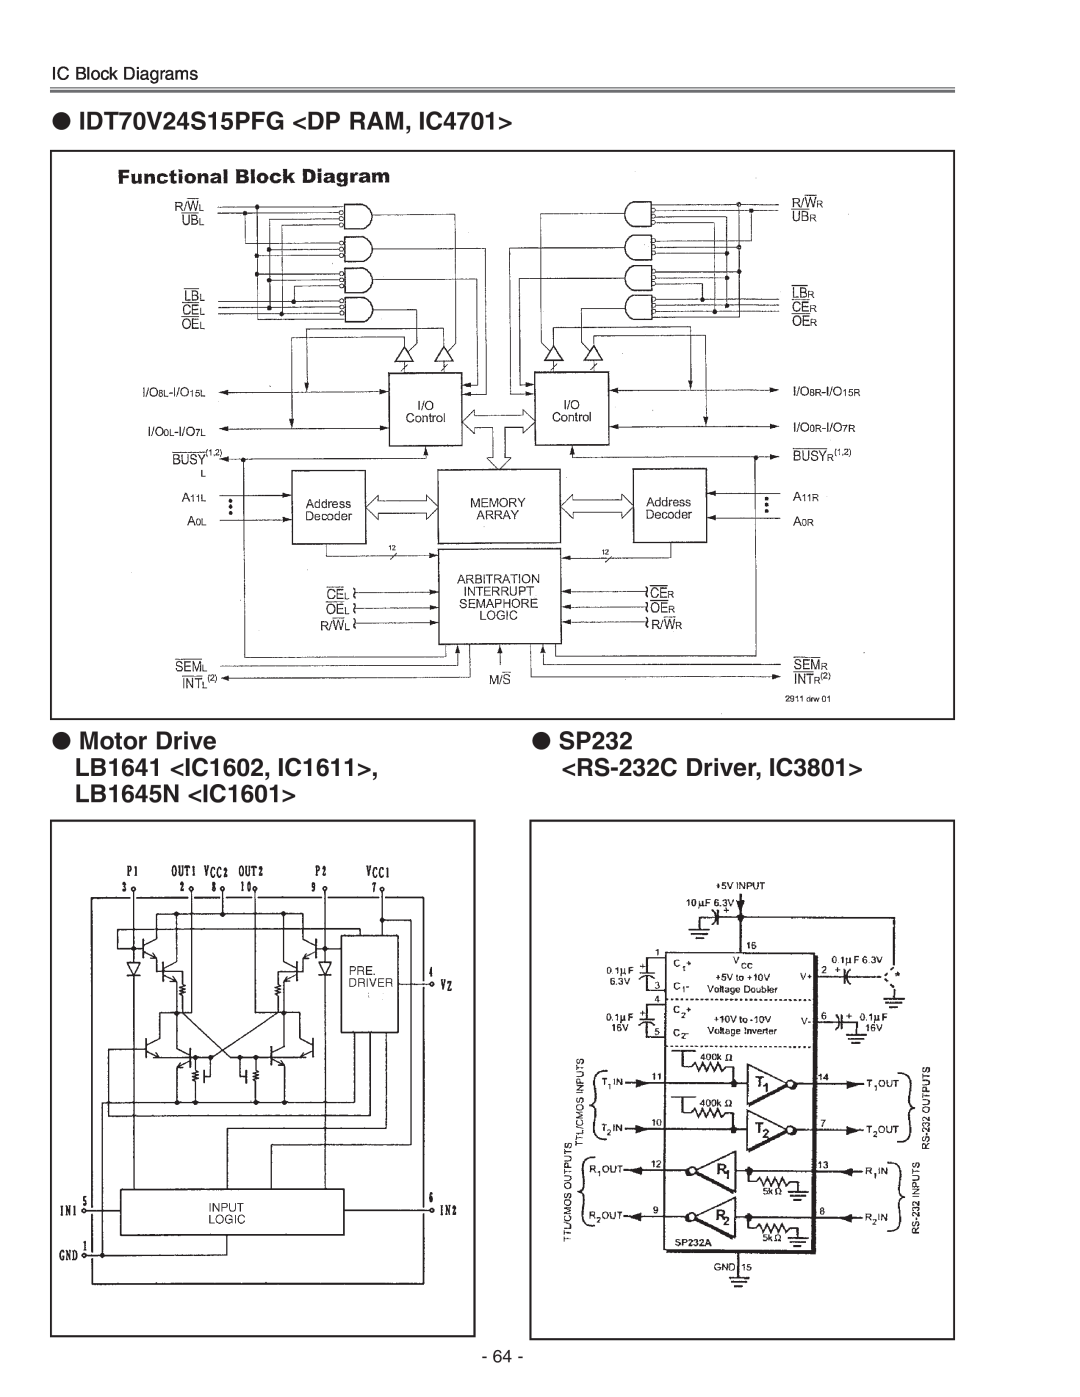 Eiki LC-X71 LC-X71L IDT70V24S15PFG DP RAM, IC4701, Motor Drive, SP232, LB1641 IC1602, IC1611, RS-232C Driver, IC3801 